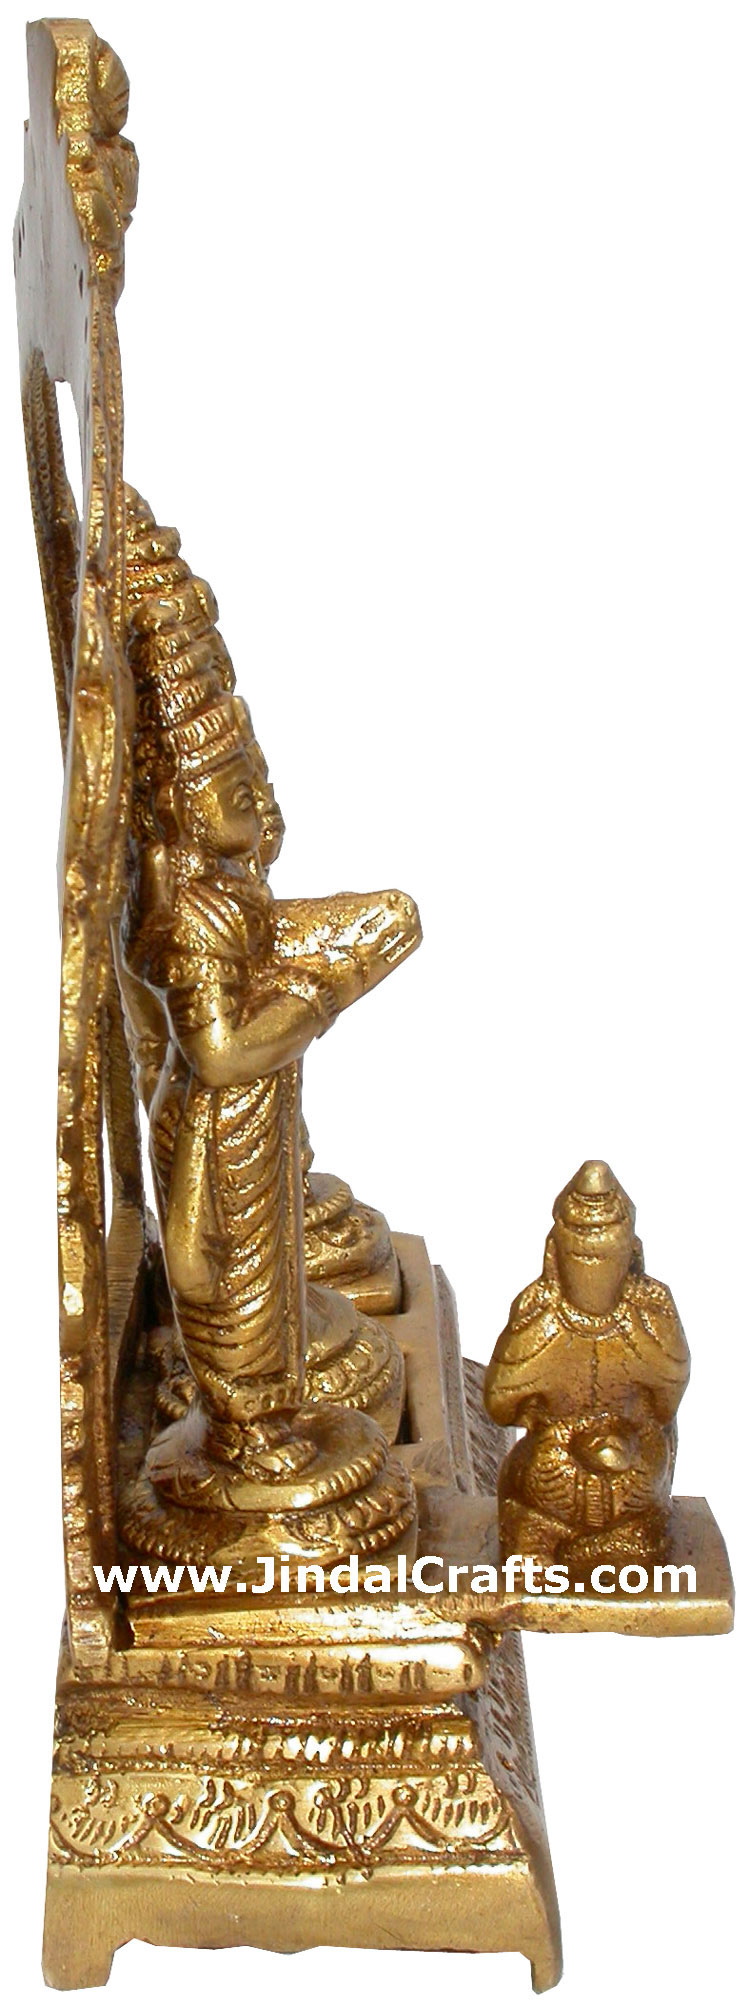 Ram Darbar Ram Seeta Luxman Hindu Idol Statues Crafts